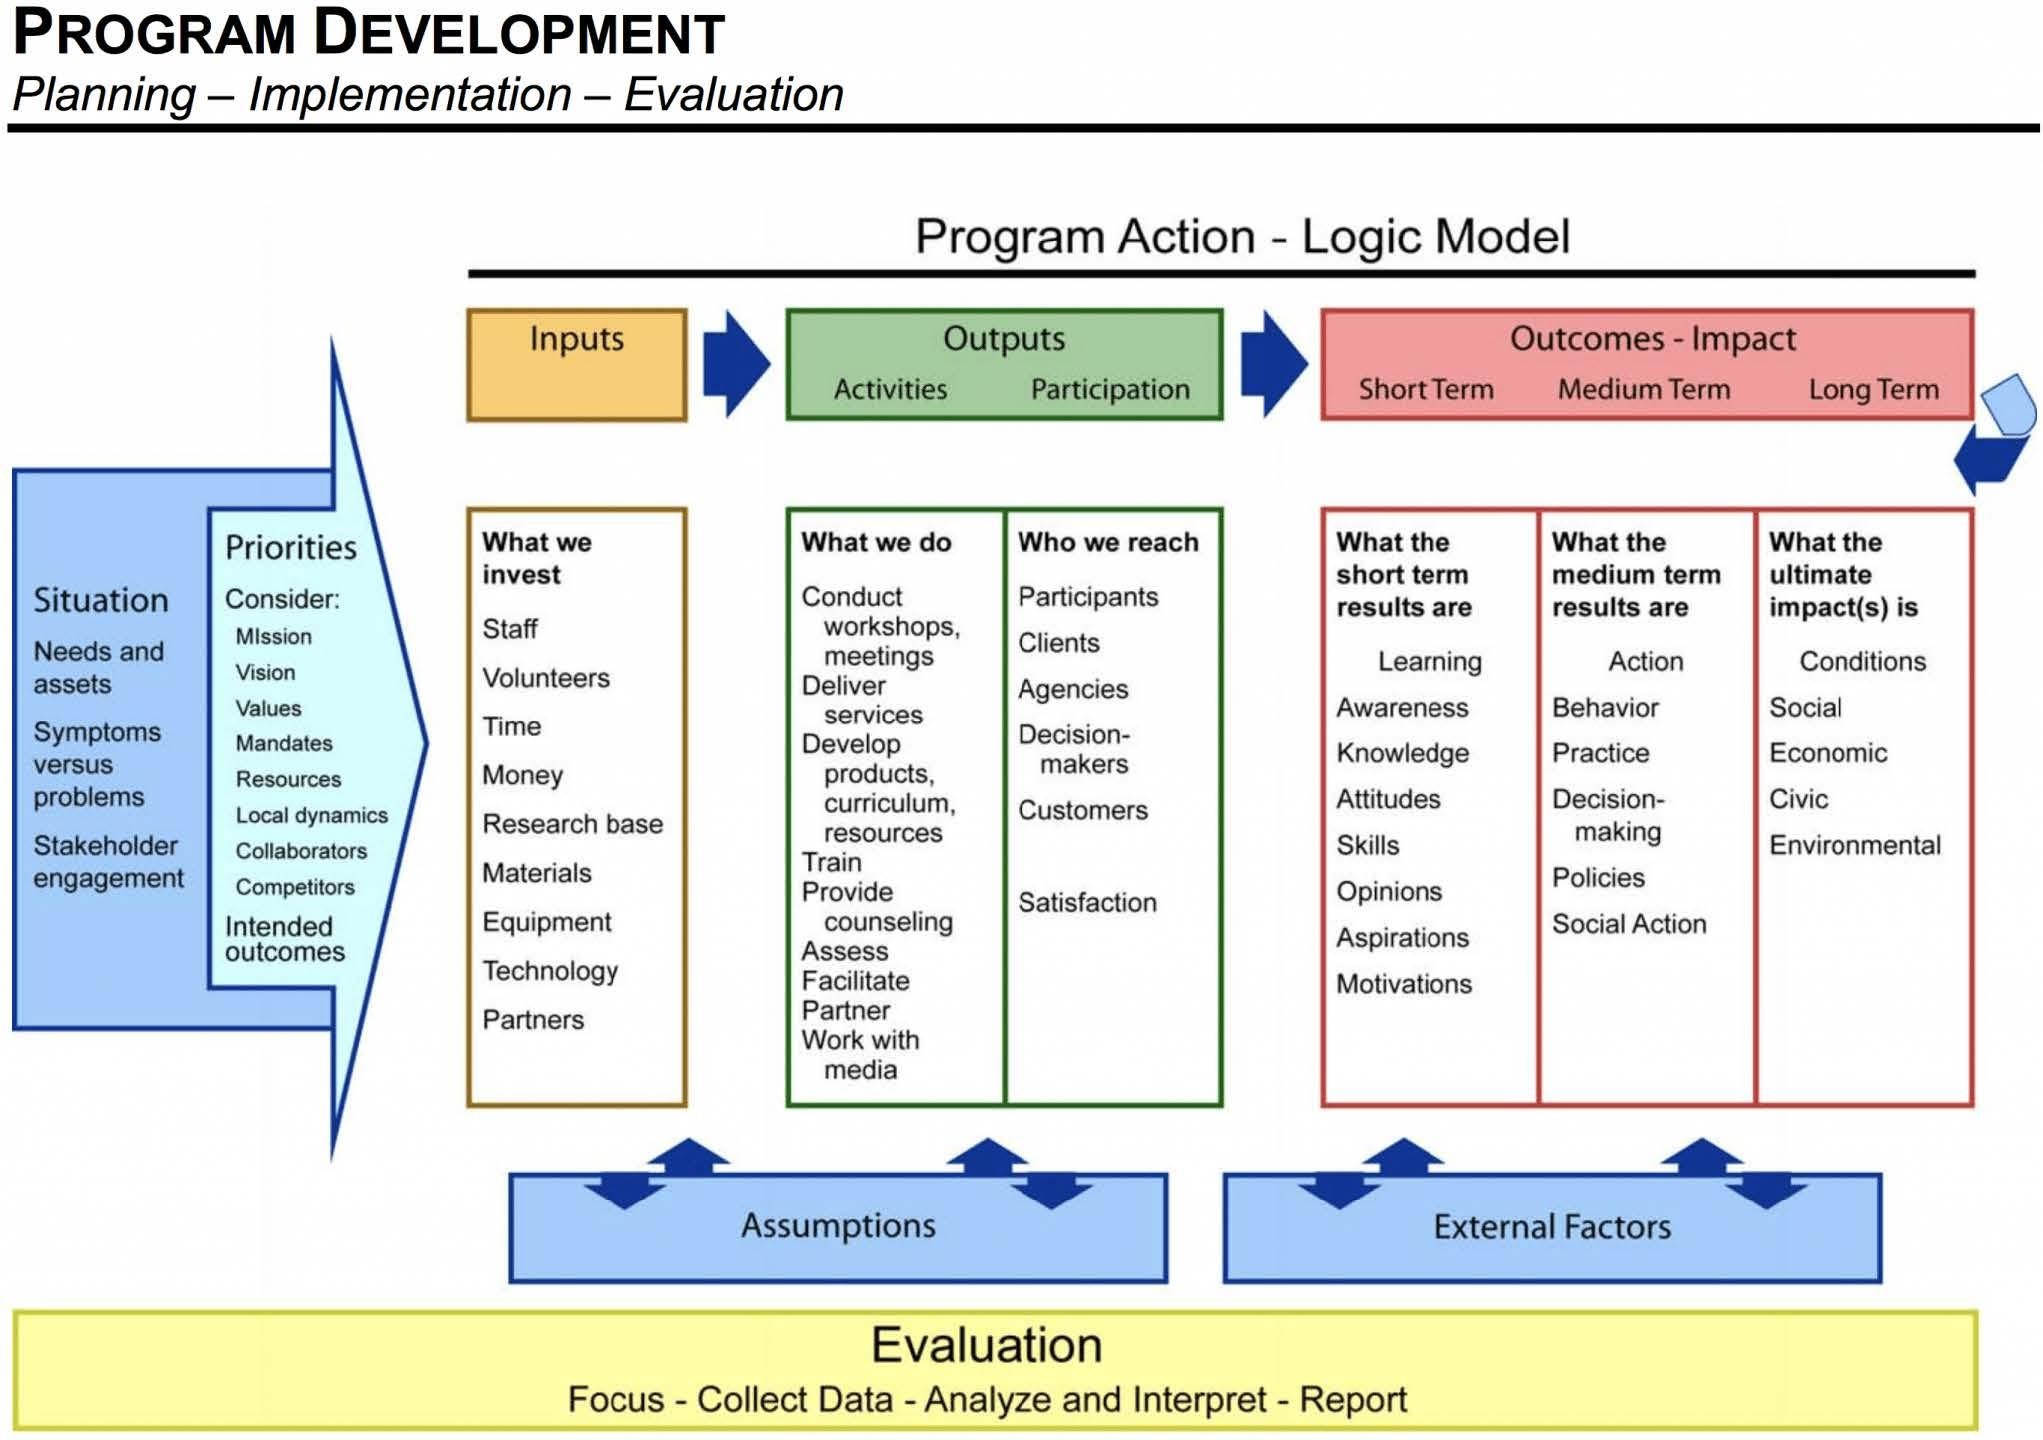 Logic Model on program development